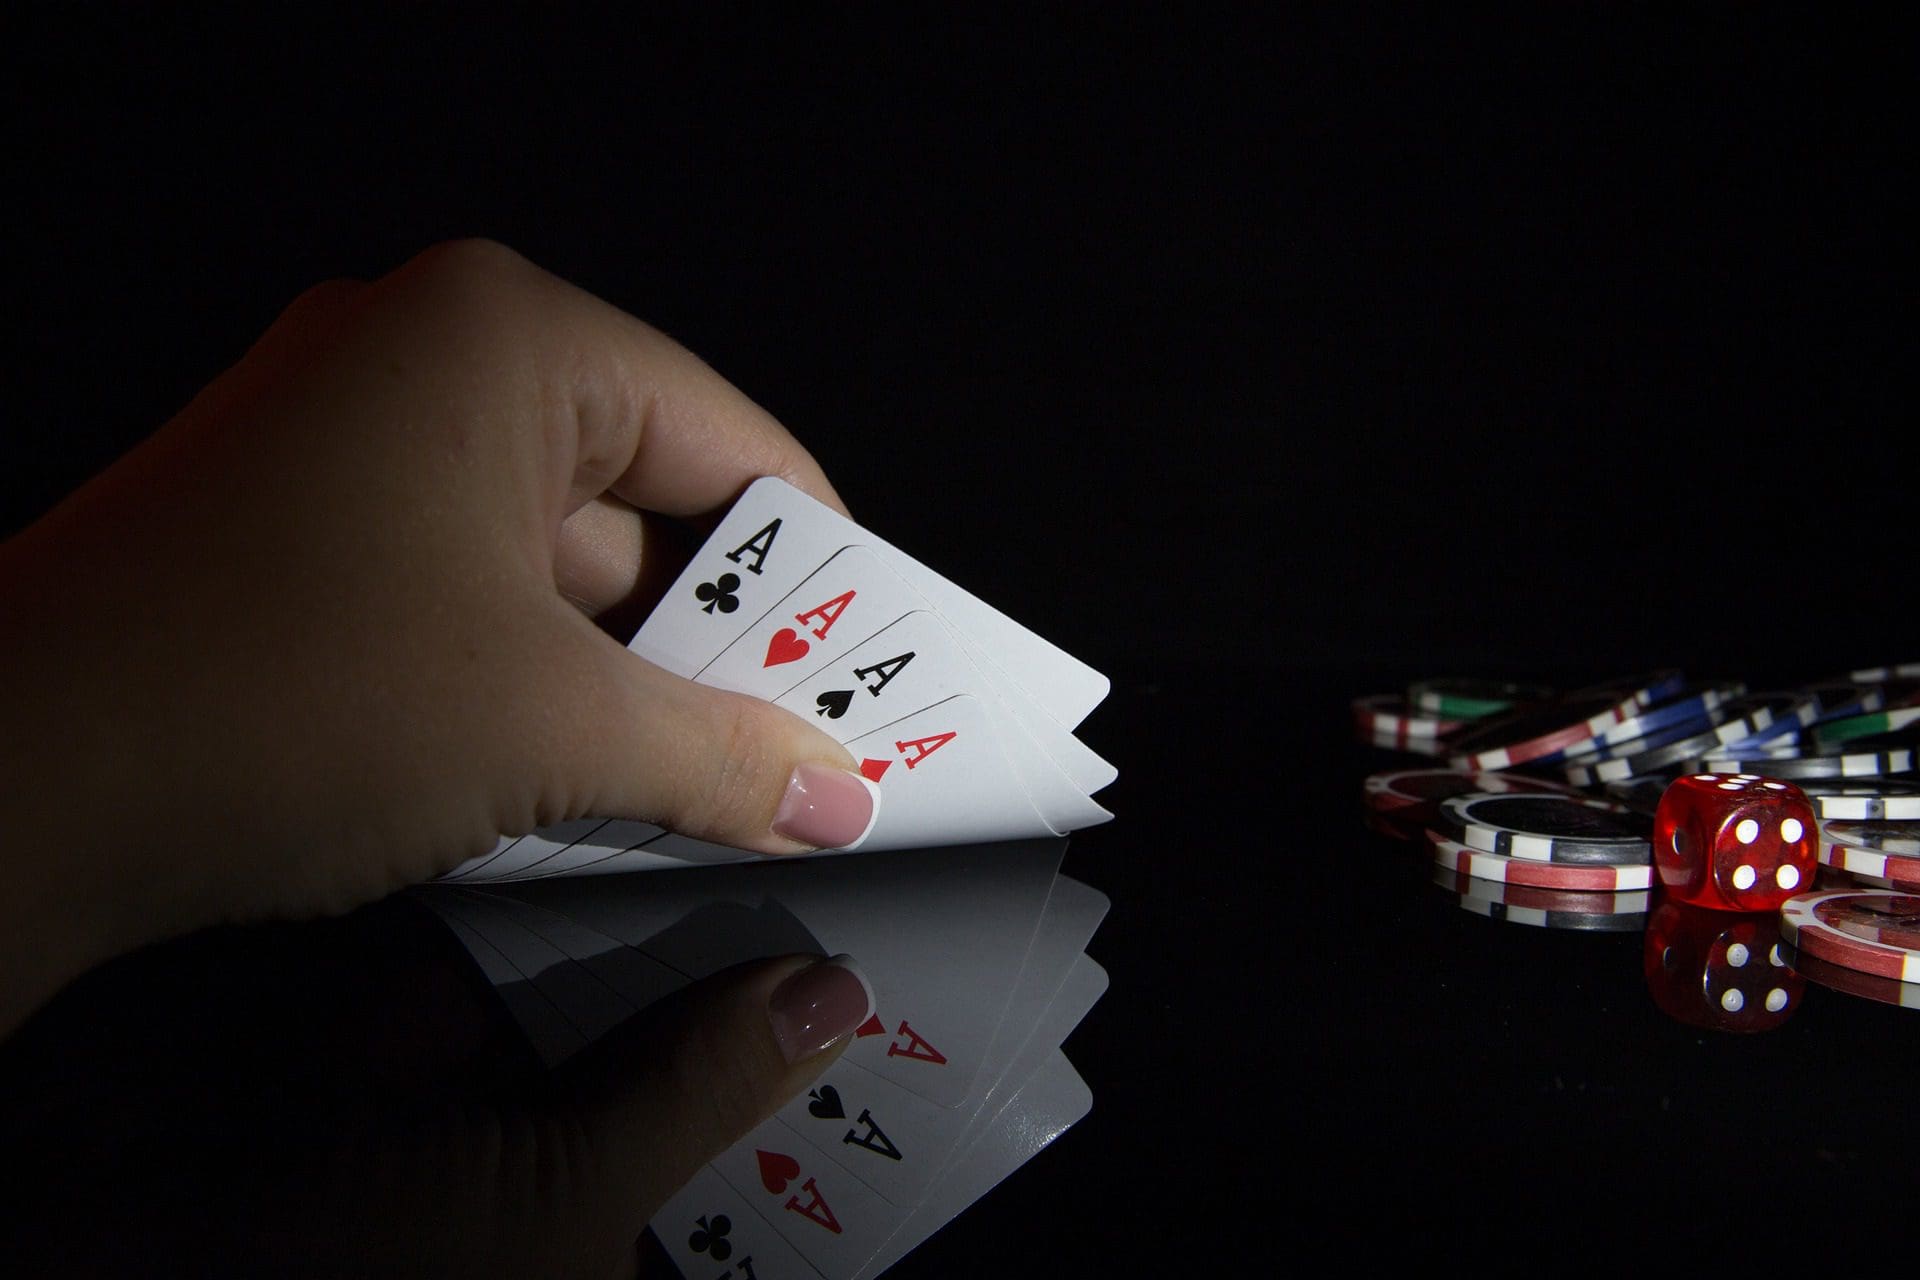 Skandale belasten ab und an Glücksspielbranche